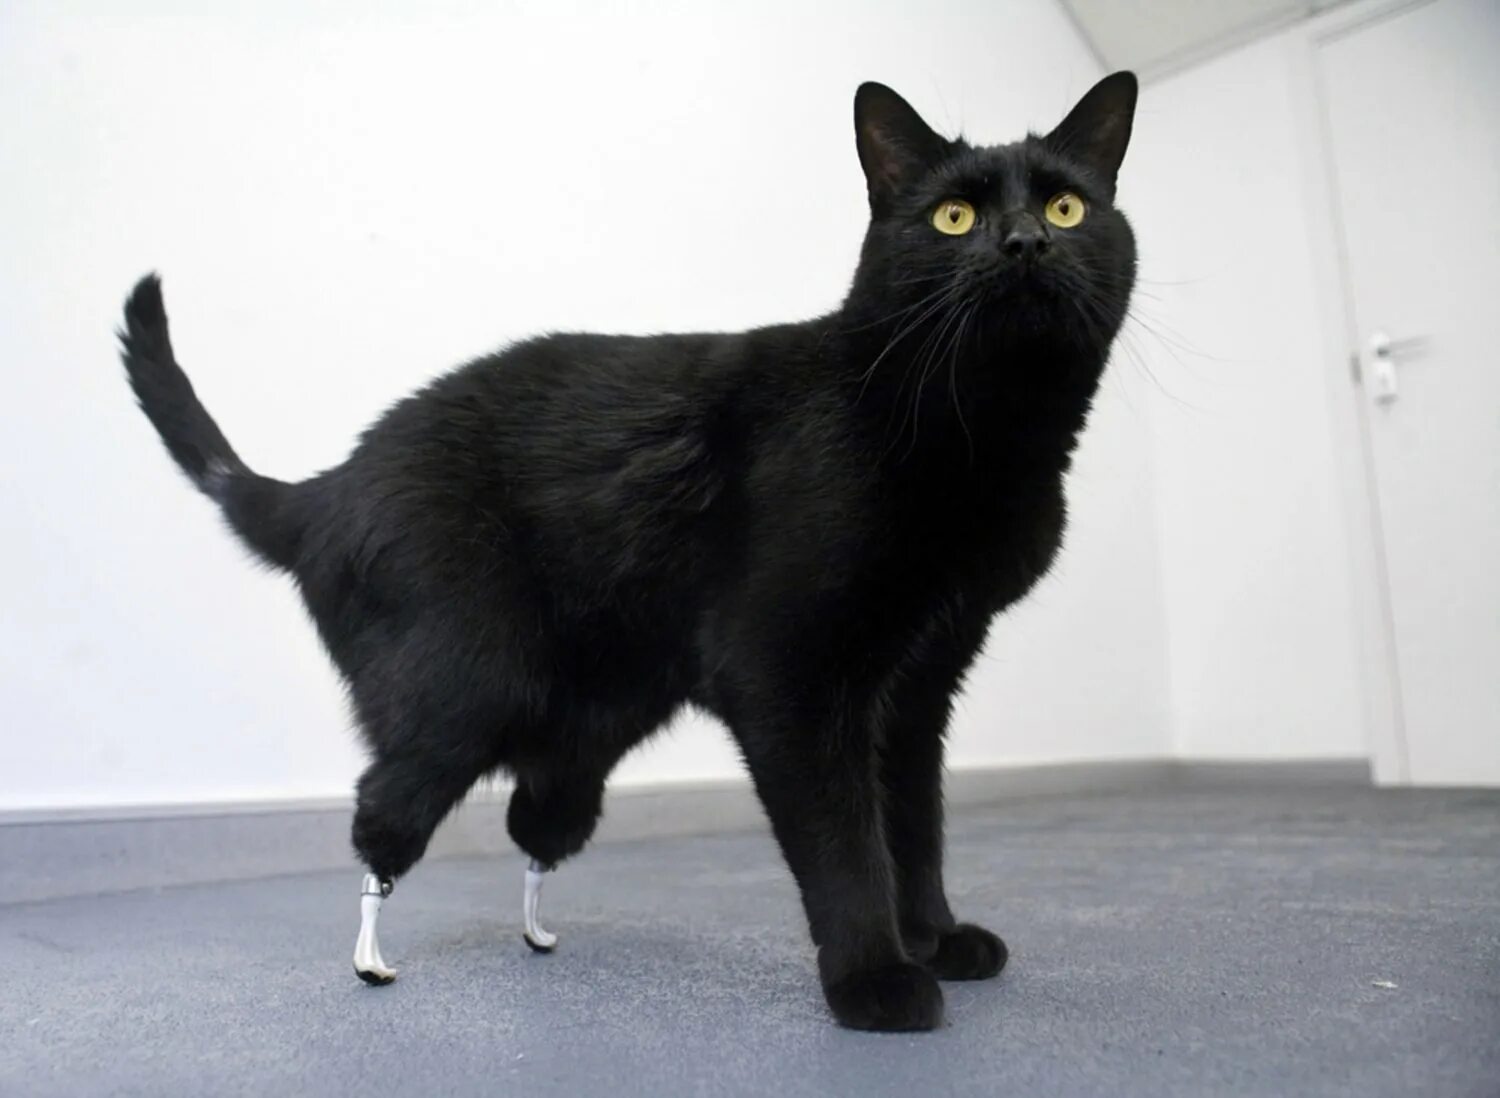 Американский рингтейл порода кошек. Бионический кот Оскар. Манчкин порода кошек черный. Кот Оскар с протезами. Порода с длинными хвостами